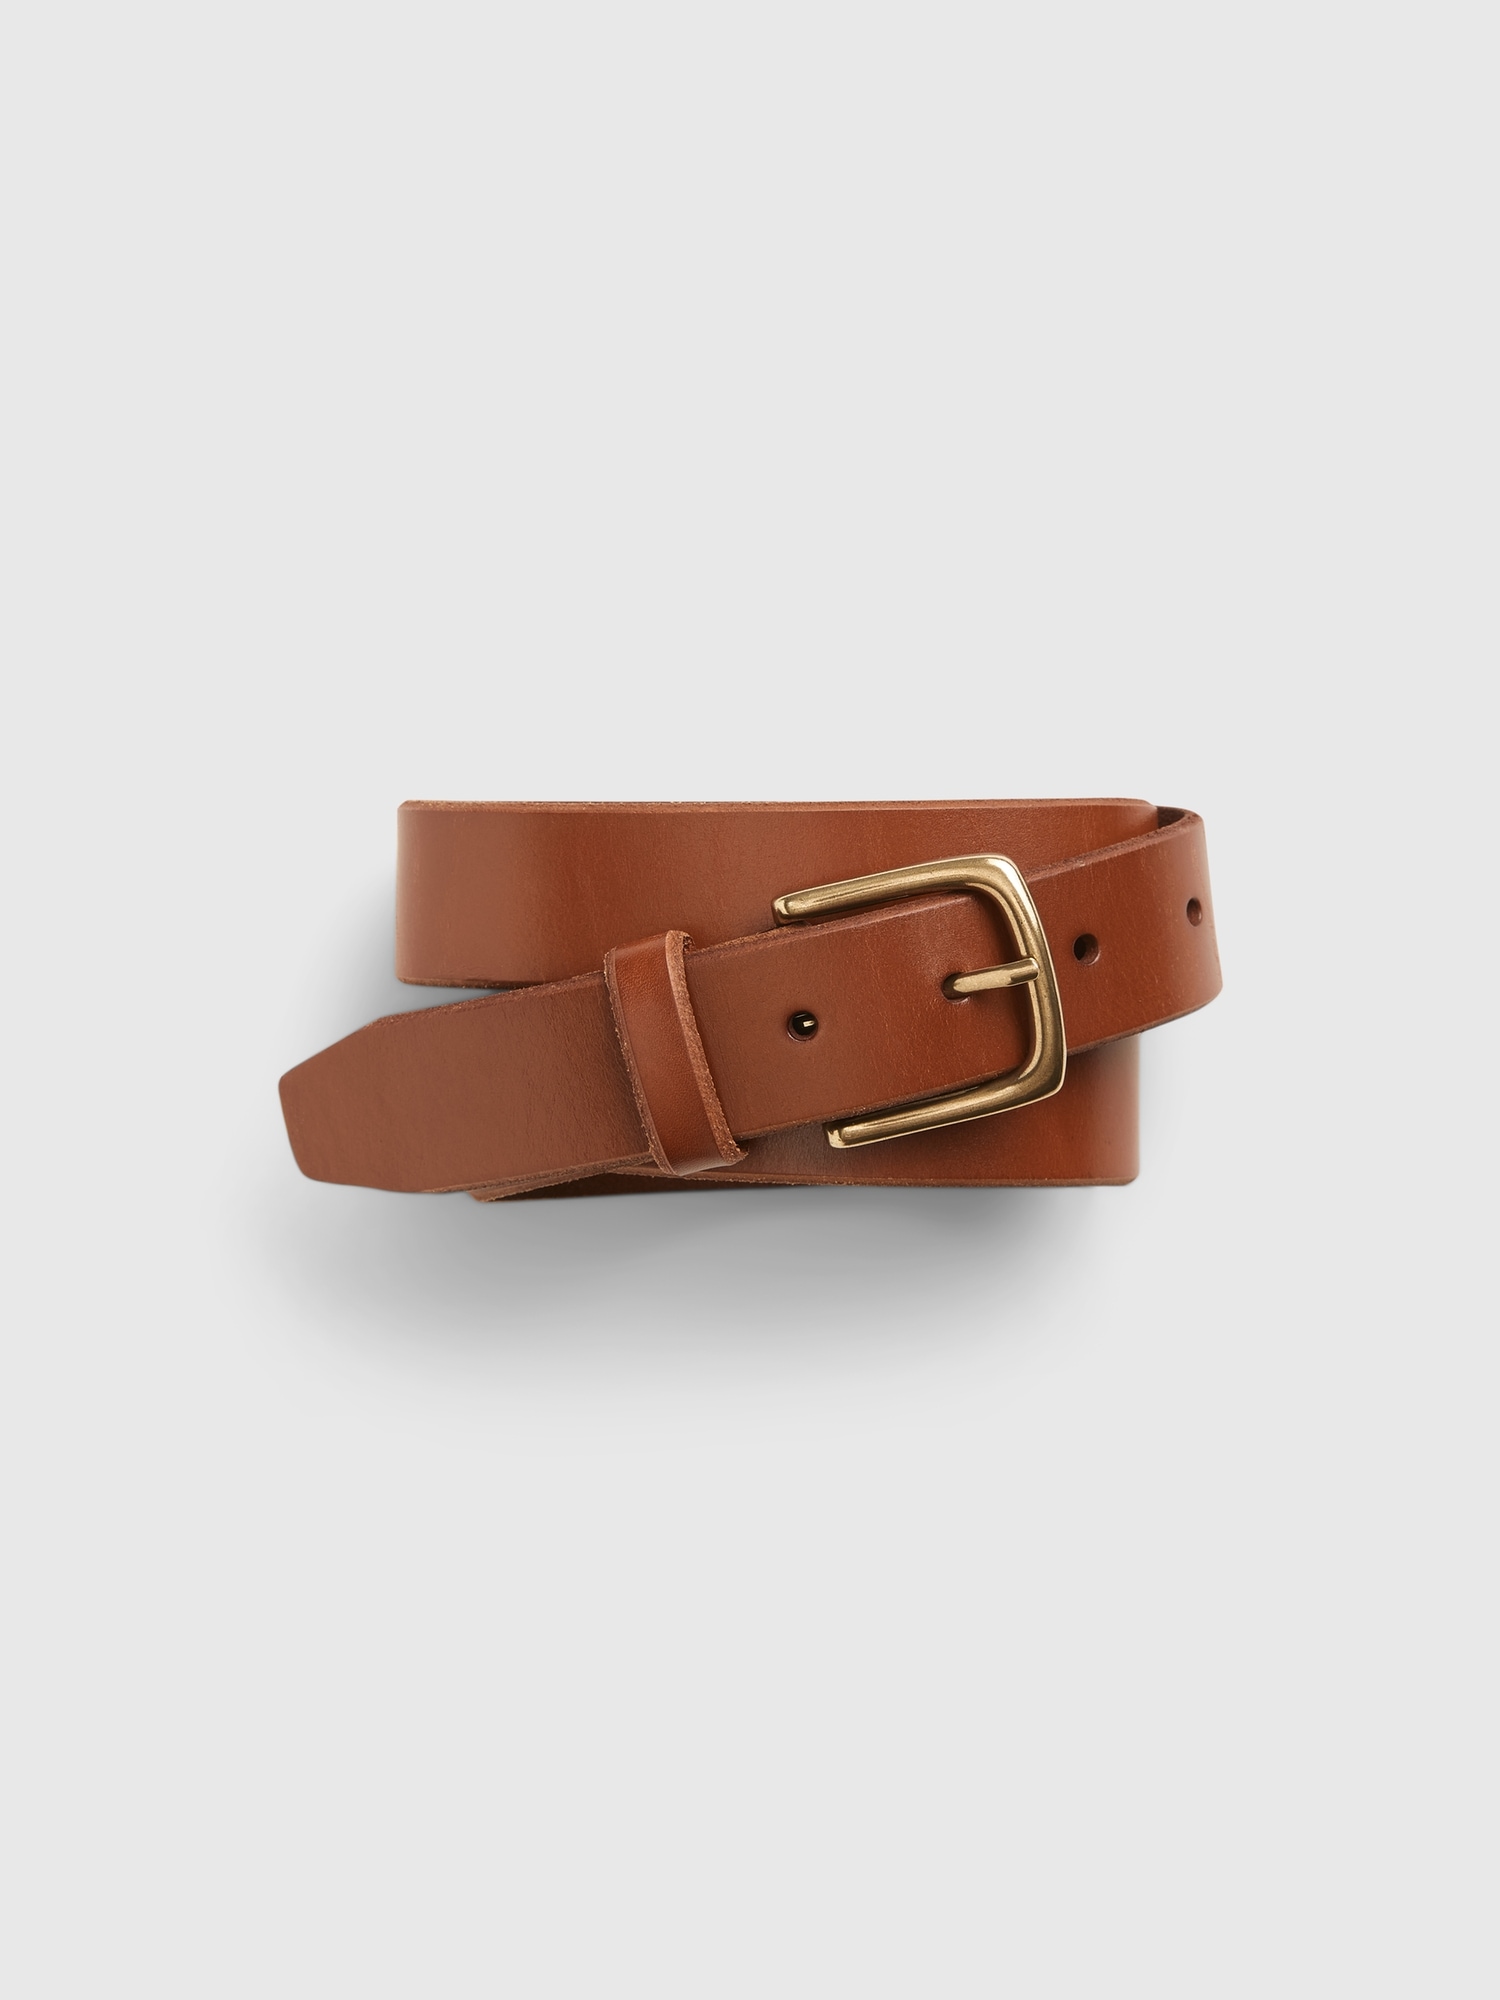 Brown Duel Tone Leather Belt, Plus Size Belts, plus size belts ...